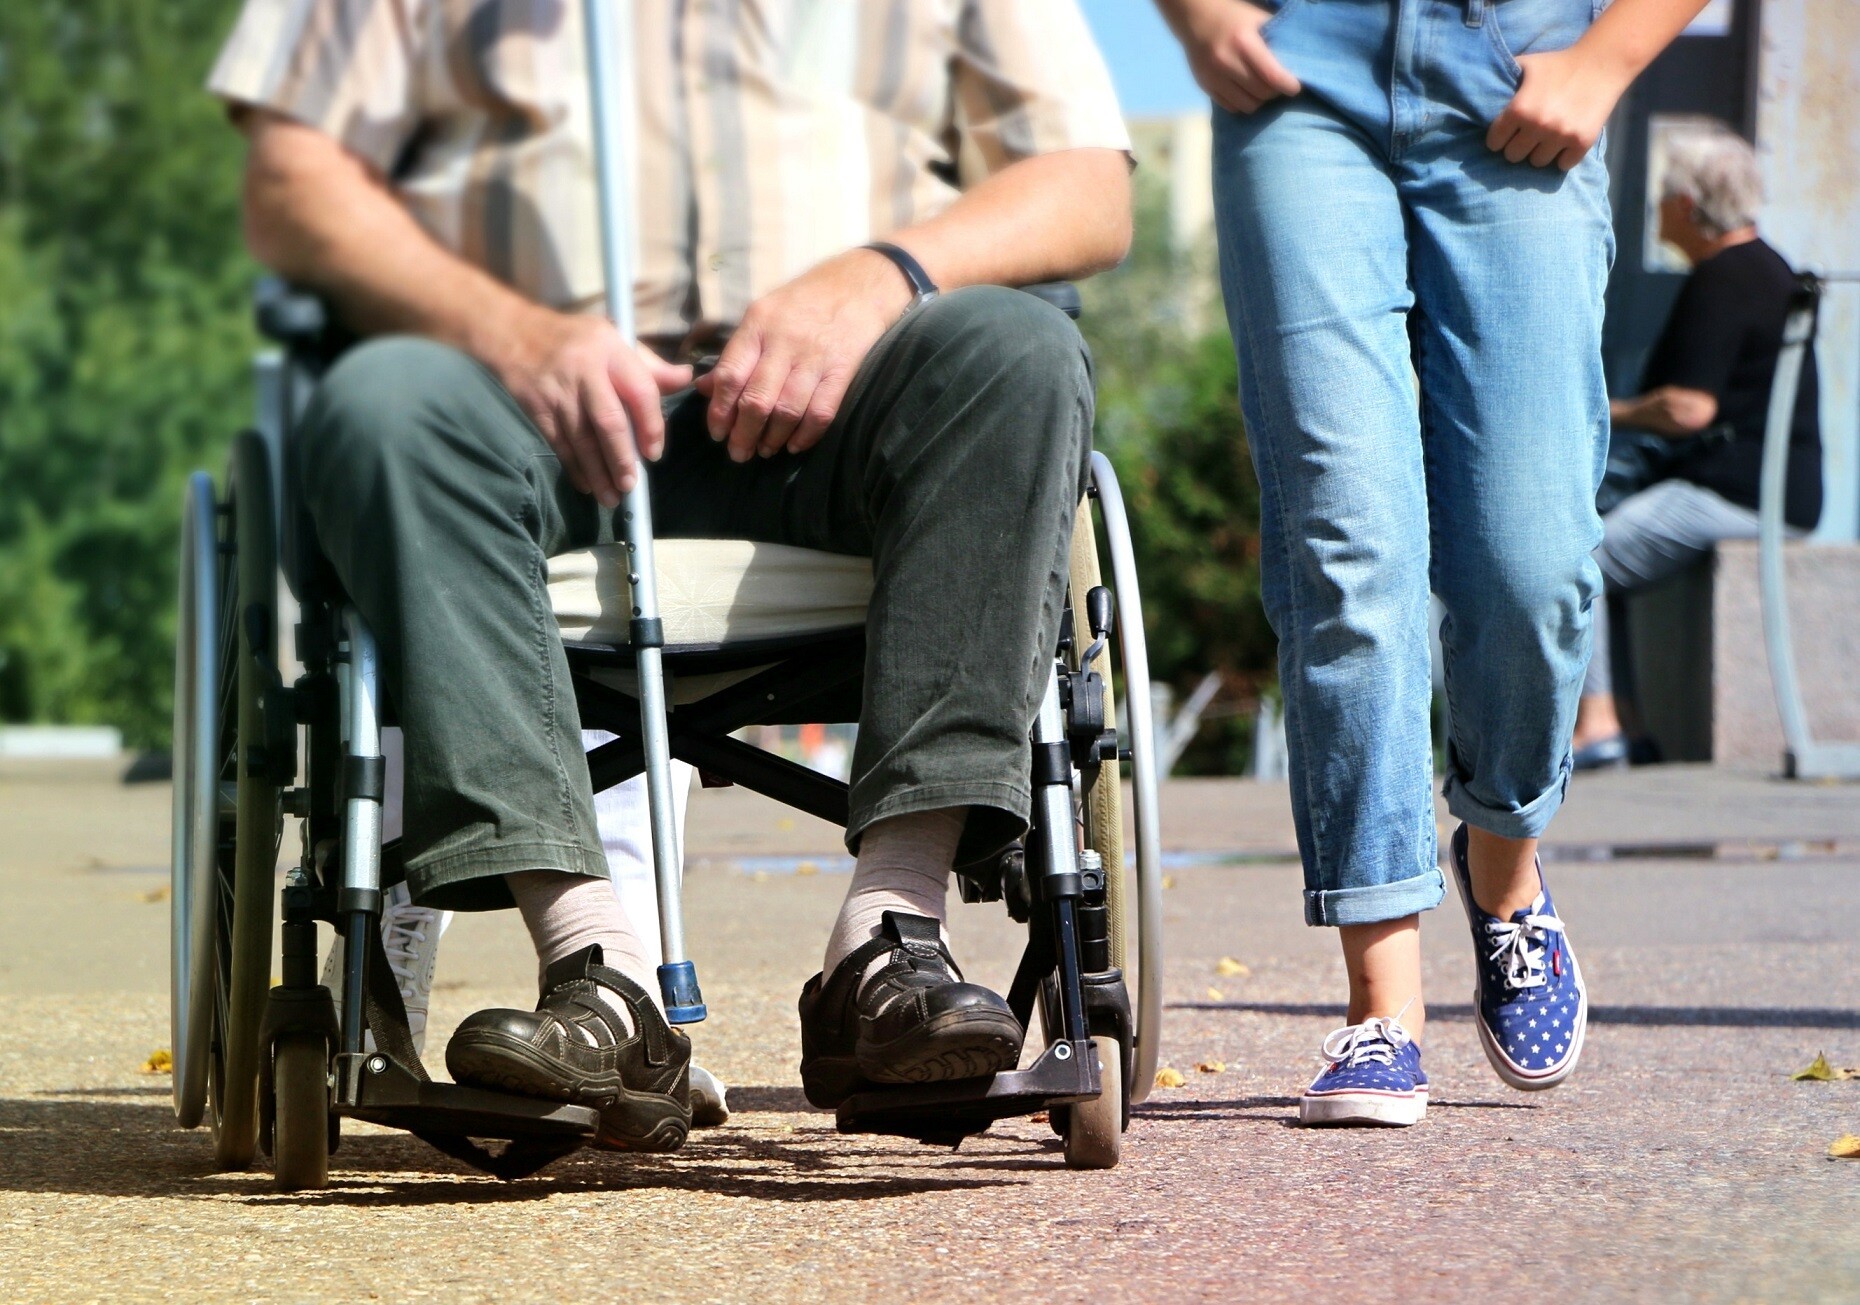 Ein pflegebedürftiger Mann in gestreiftem Hemd sitzt im Rollstuhl, rechts neben ihm läuft eine weibliche Begleitperson, die Hände in den Jeanstaschen. Die Köpfe sind nicht zu sehen.